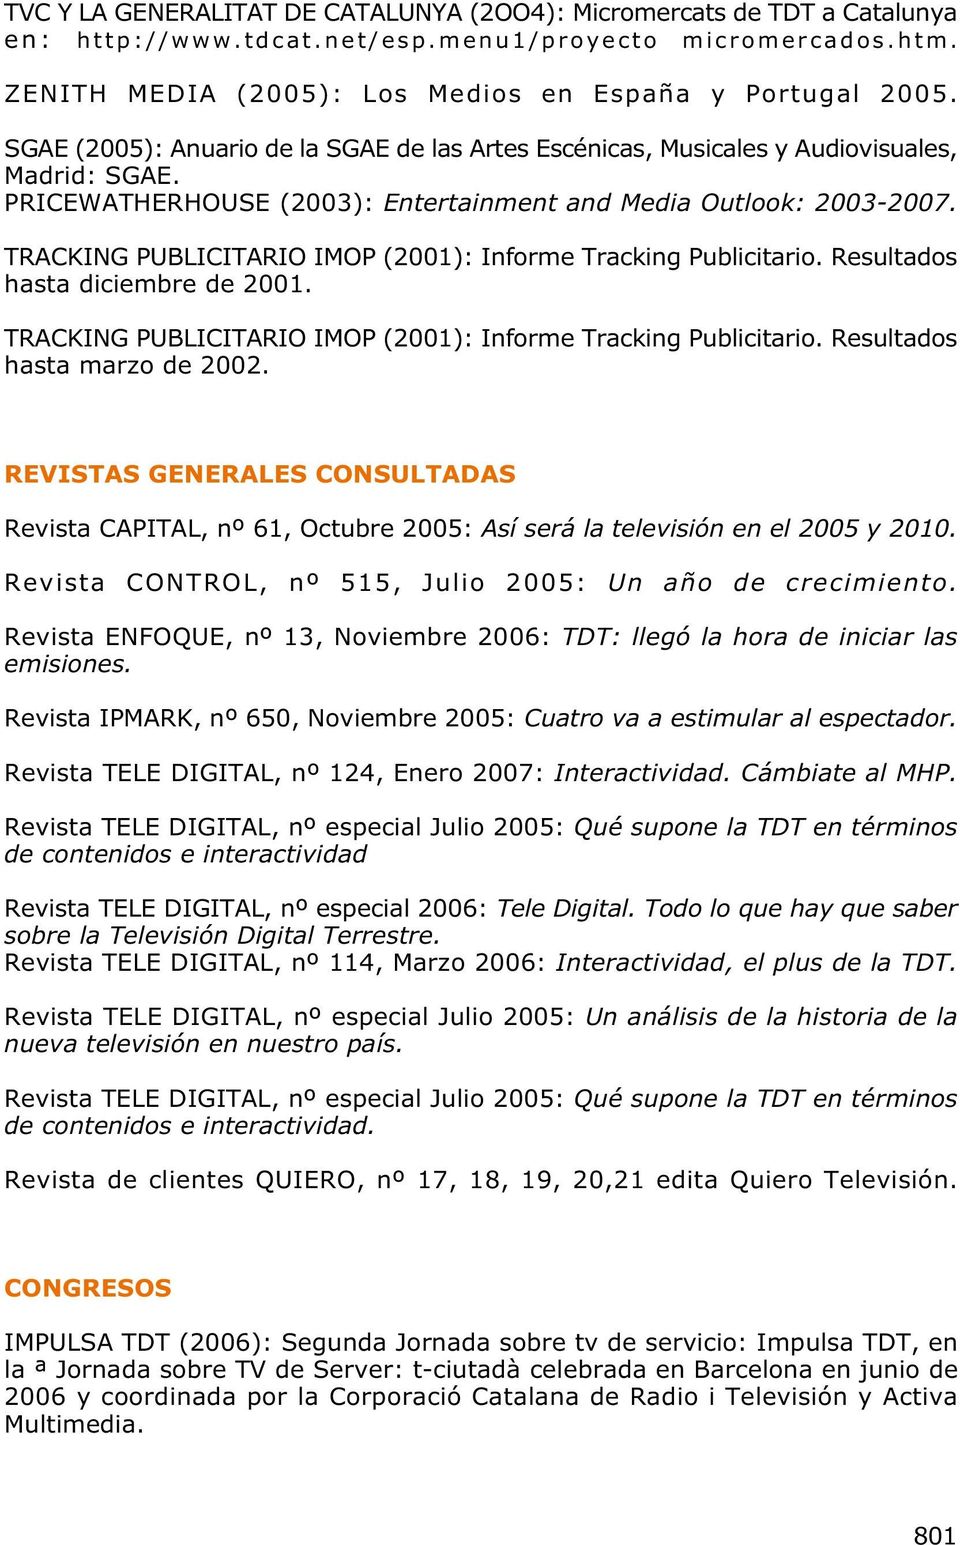 TRACKING PUBLICITARIO IMOP (2001): Informe Tracking Publicitario. Resultados hasta diciembre de 2001. TRACKING PUBLICITARIO IMOP (2001): Informe Tracking Publicitario. Resultados hasta marzo de 2002.